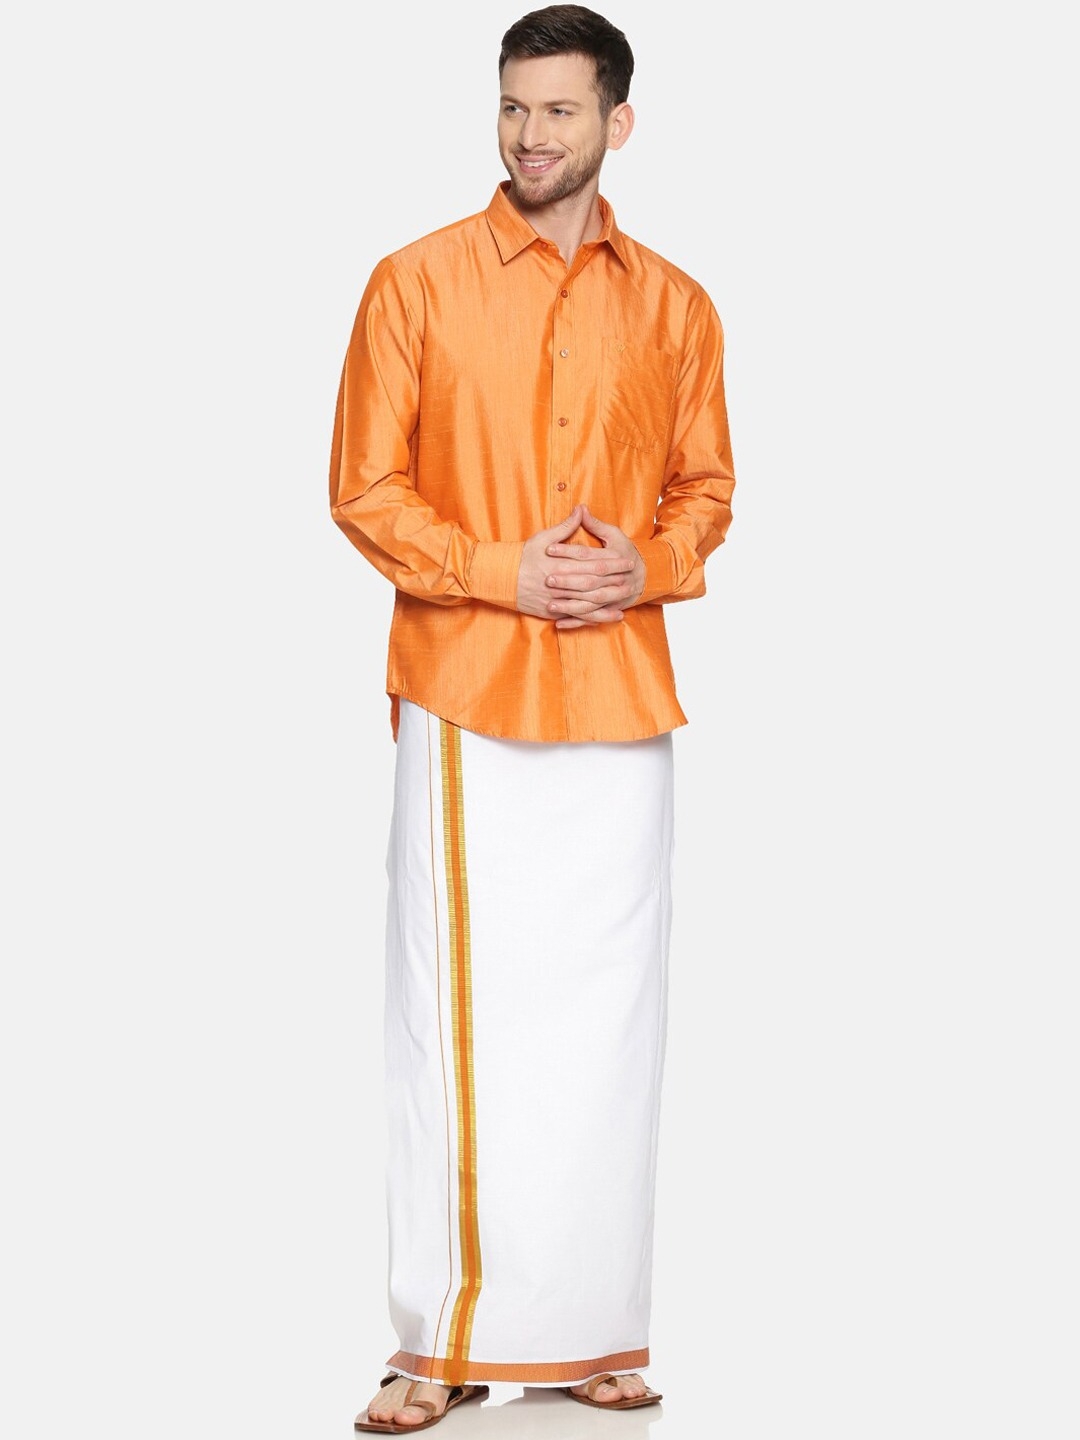 RAMRAJ COTTON Men Orange  White Solid Shirt  Dhoti Set